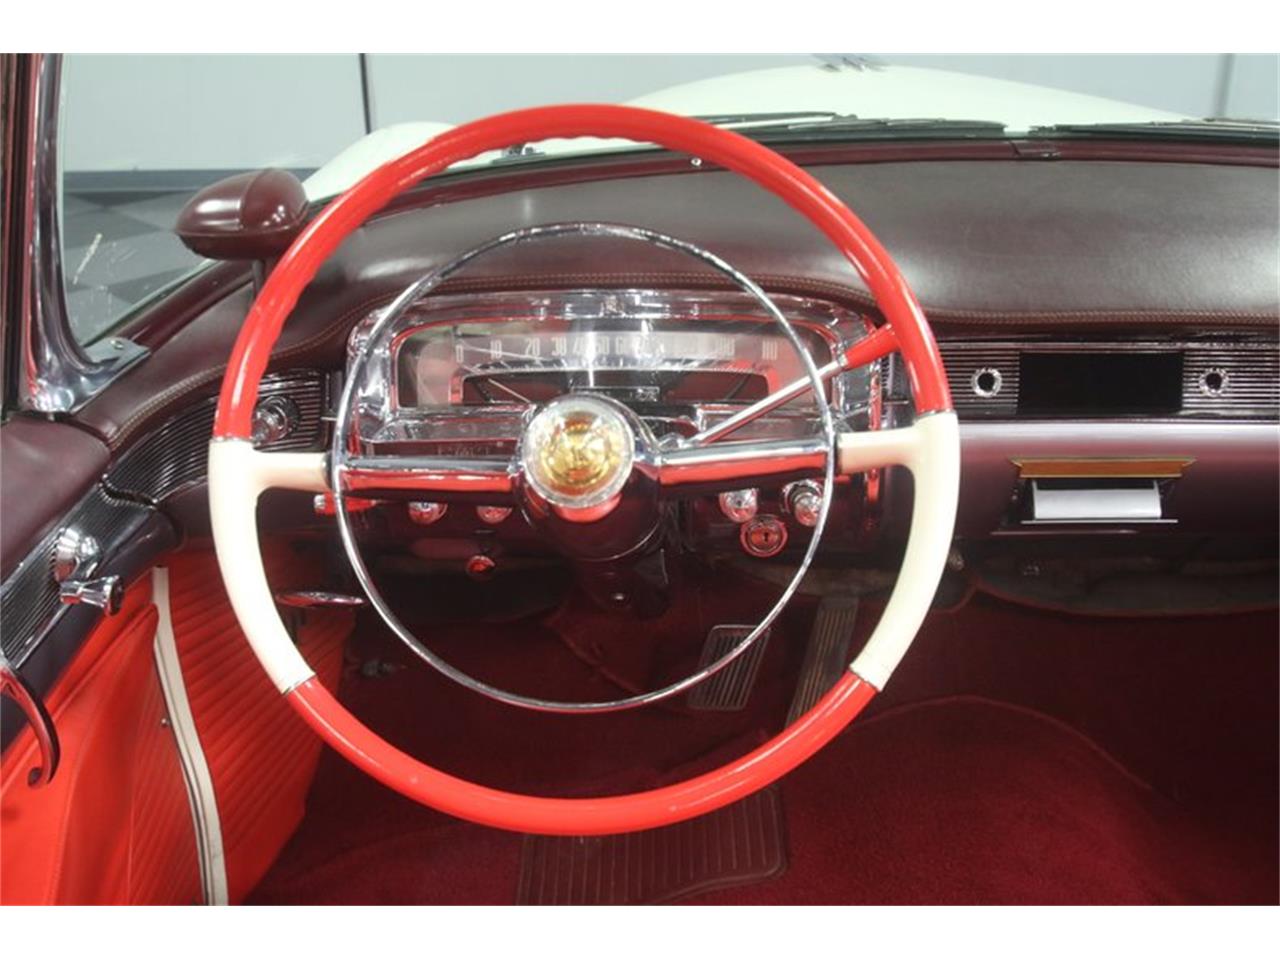 1954 cadillac eldorado for sale classiccars com cc 1089528 1954 cadillac eldorado for sale